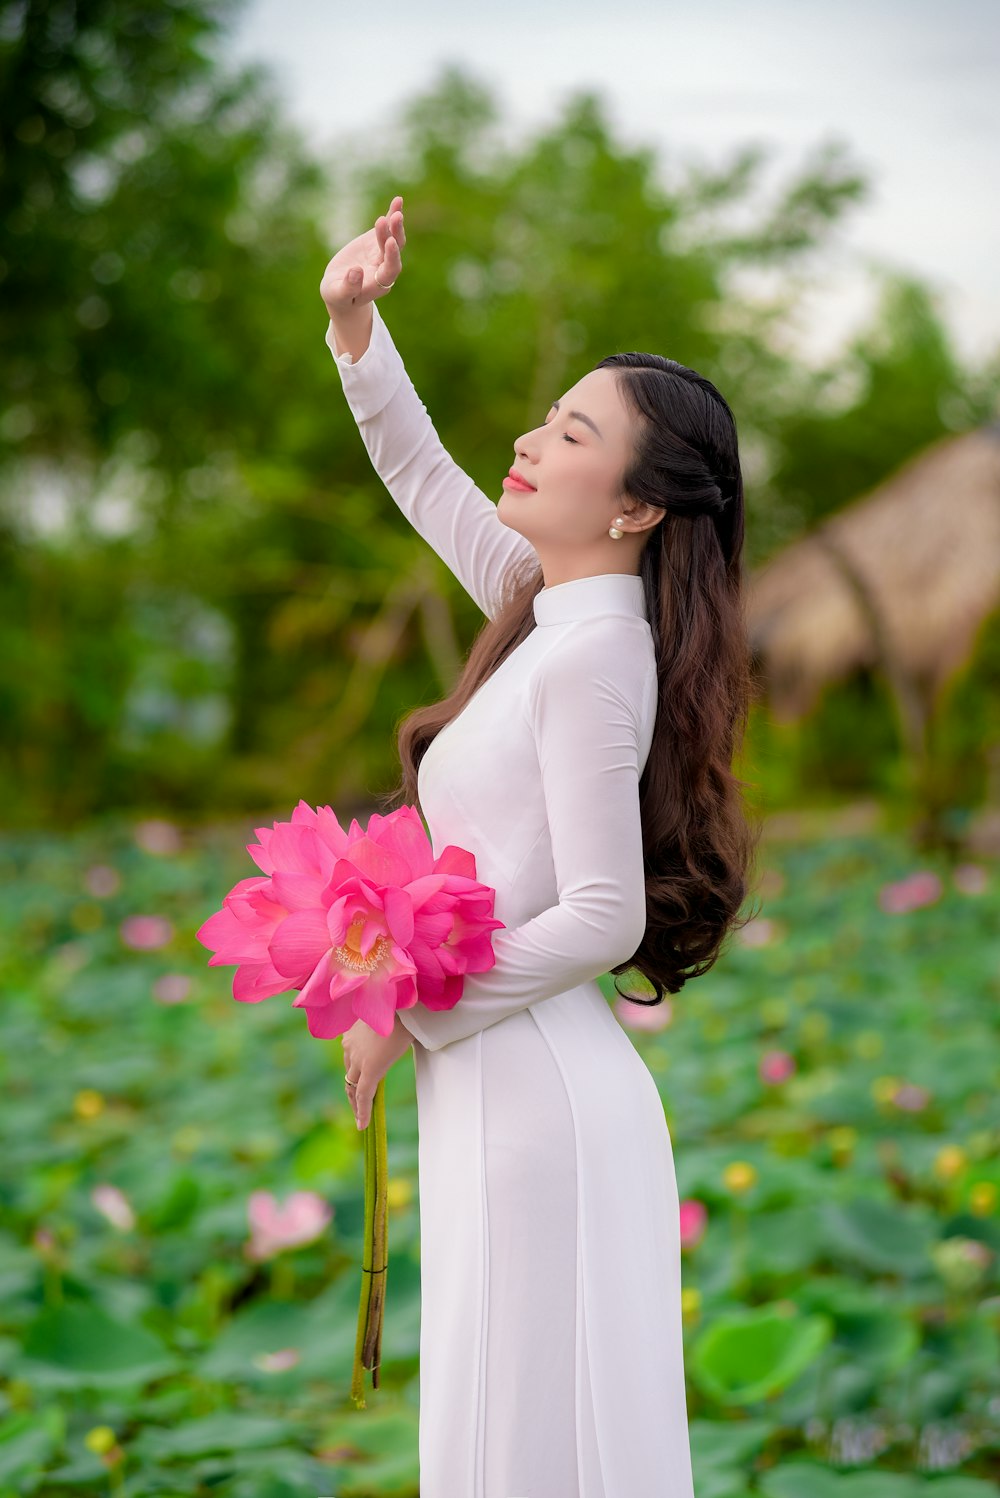 분홍색 꽃을 들고 흰색 긴팔 드레스를 입은 여자